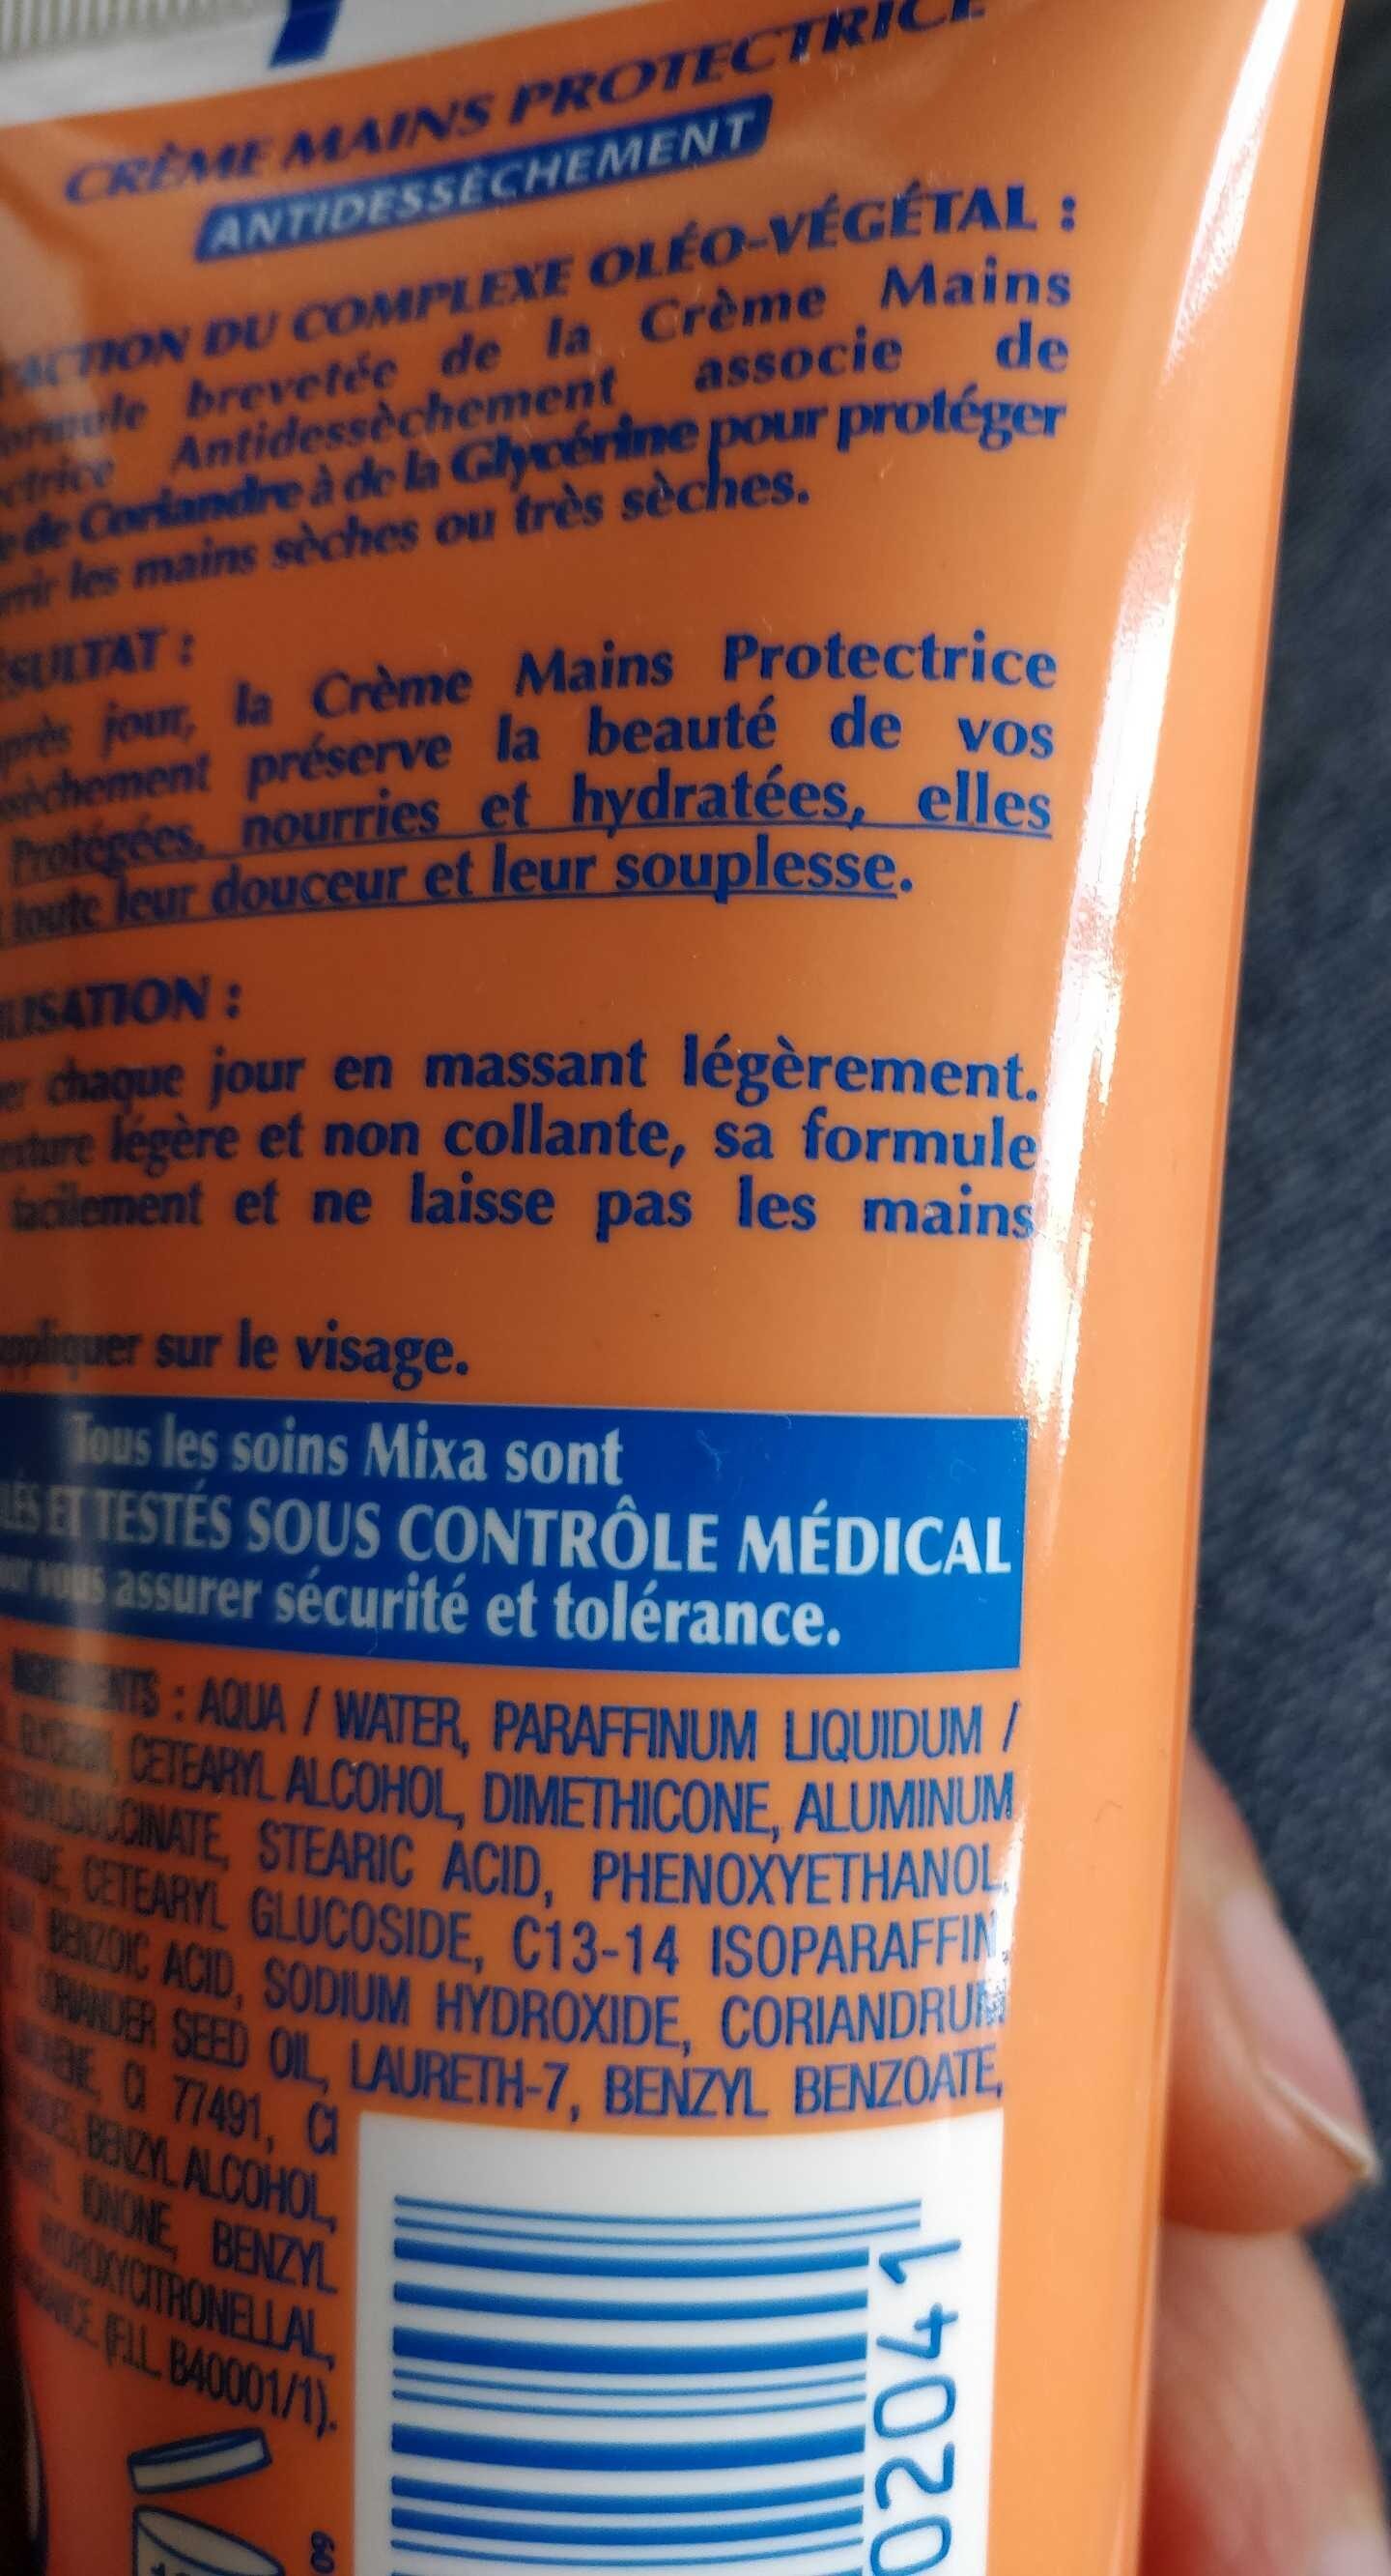 Crème mains protectrice antidéssèchement - Product - fr